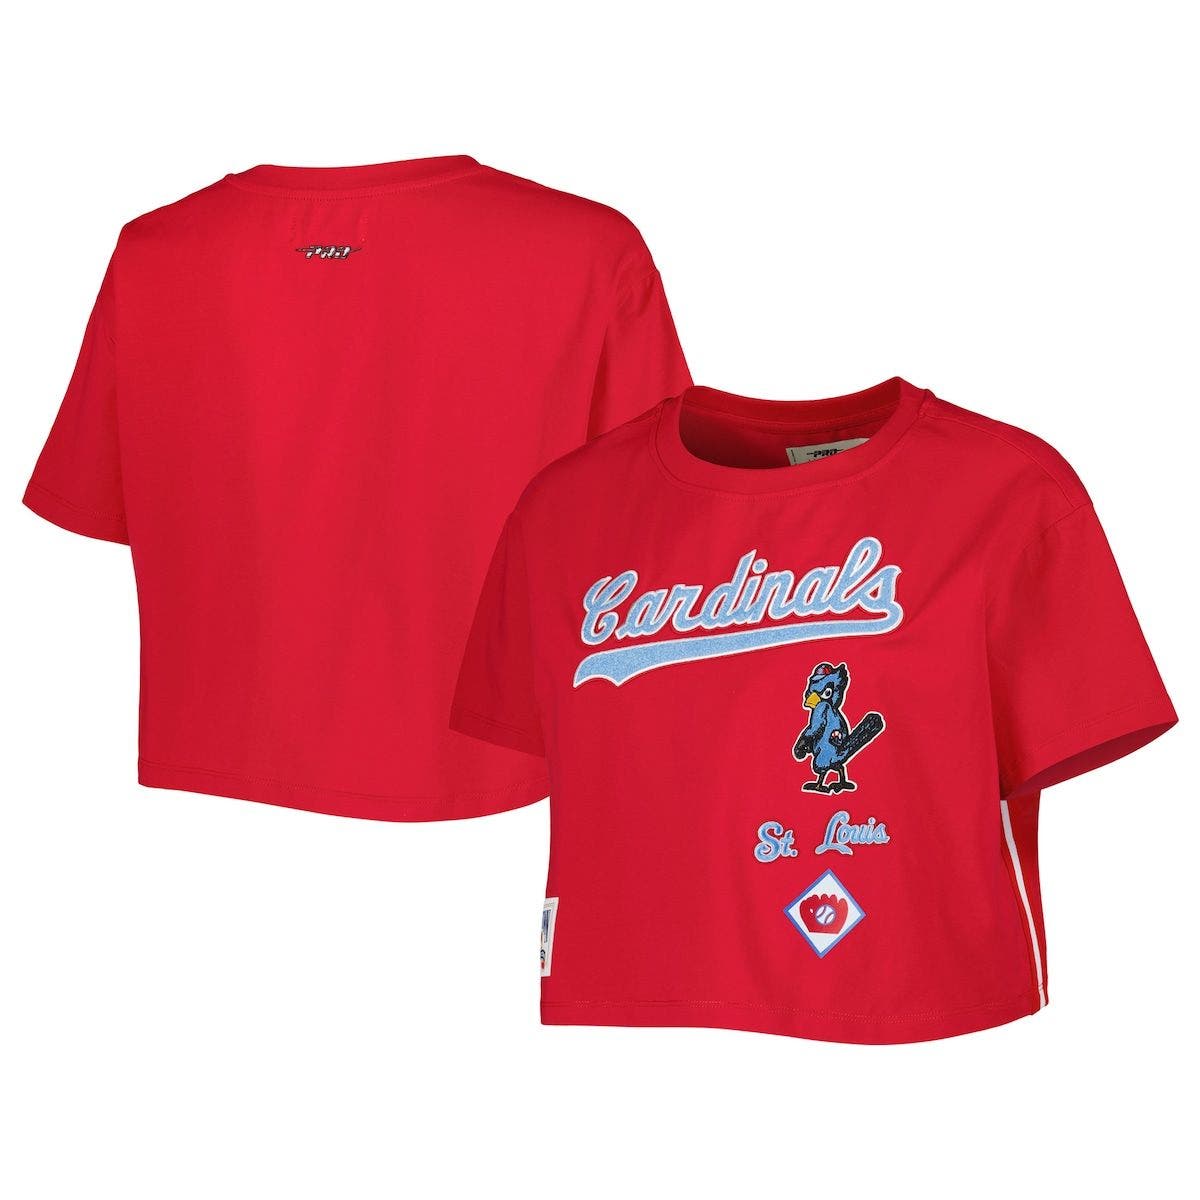 Classic Cardinals jersey